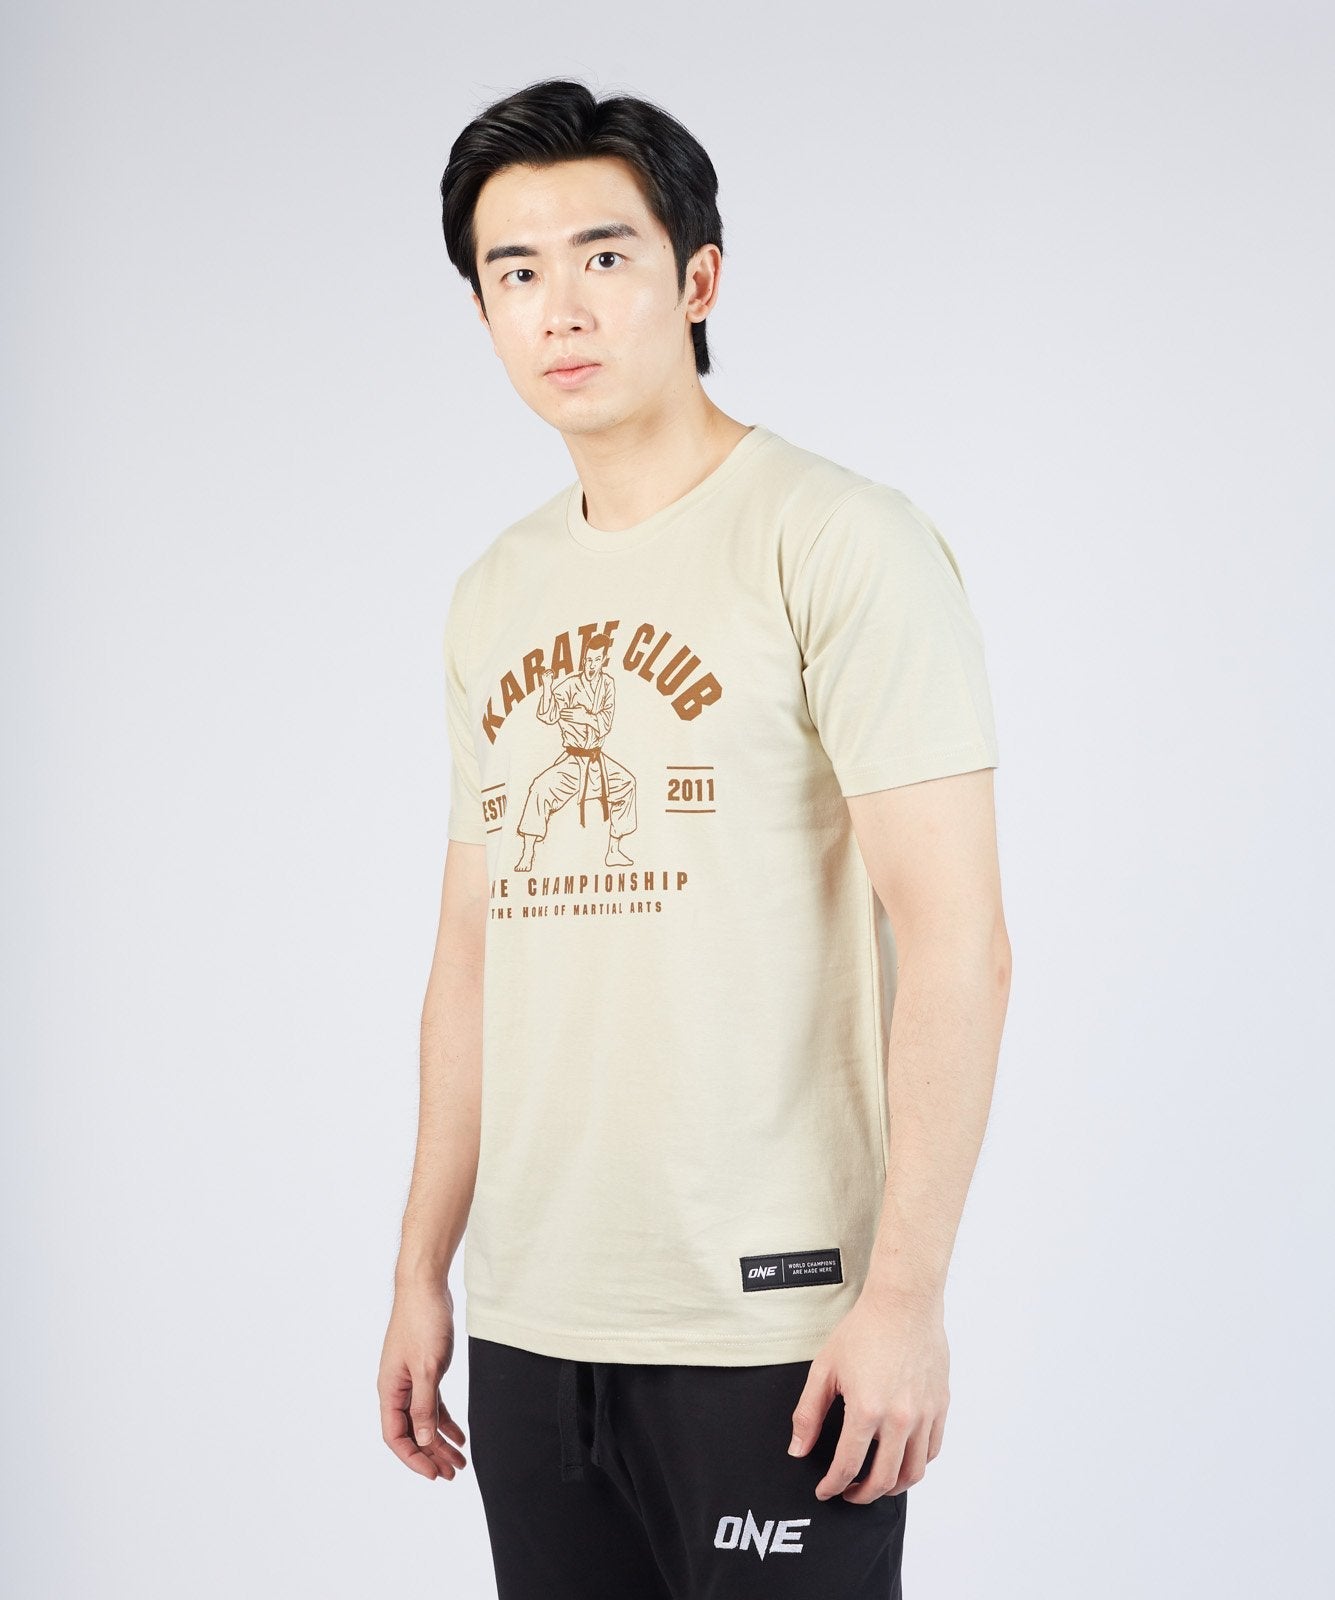 ONE Mens Karate Club T-Shirt - Budo Online